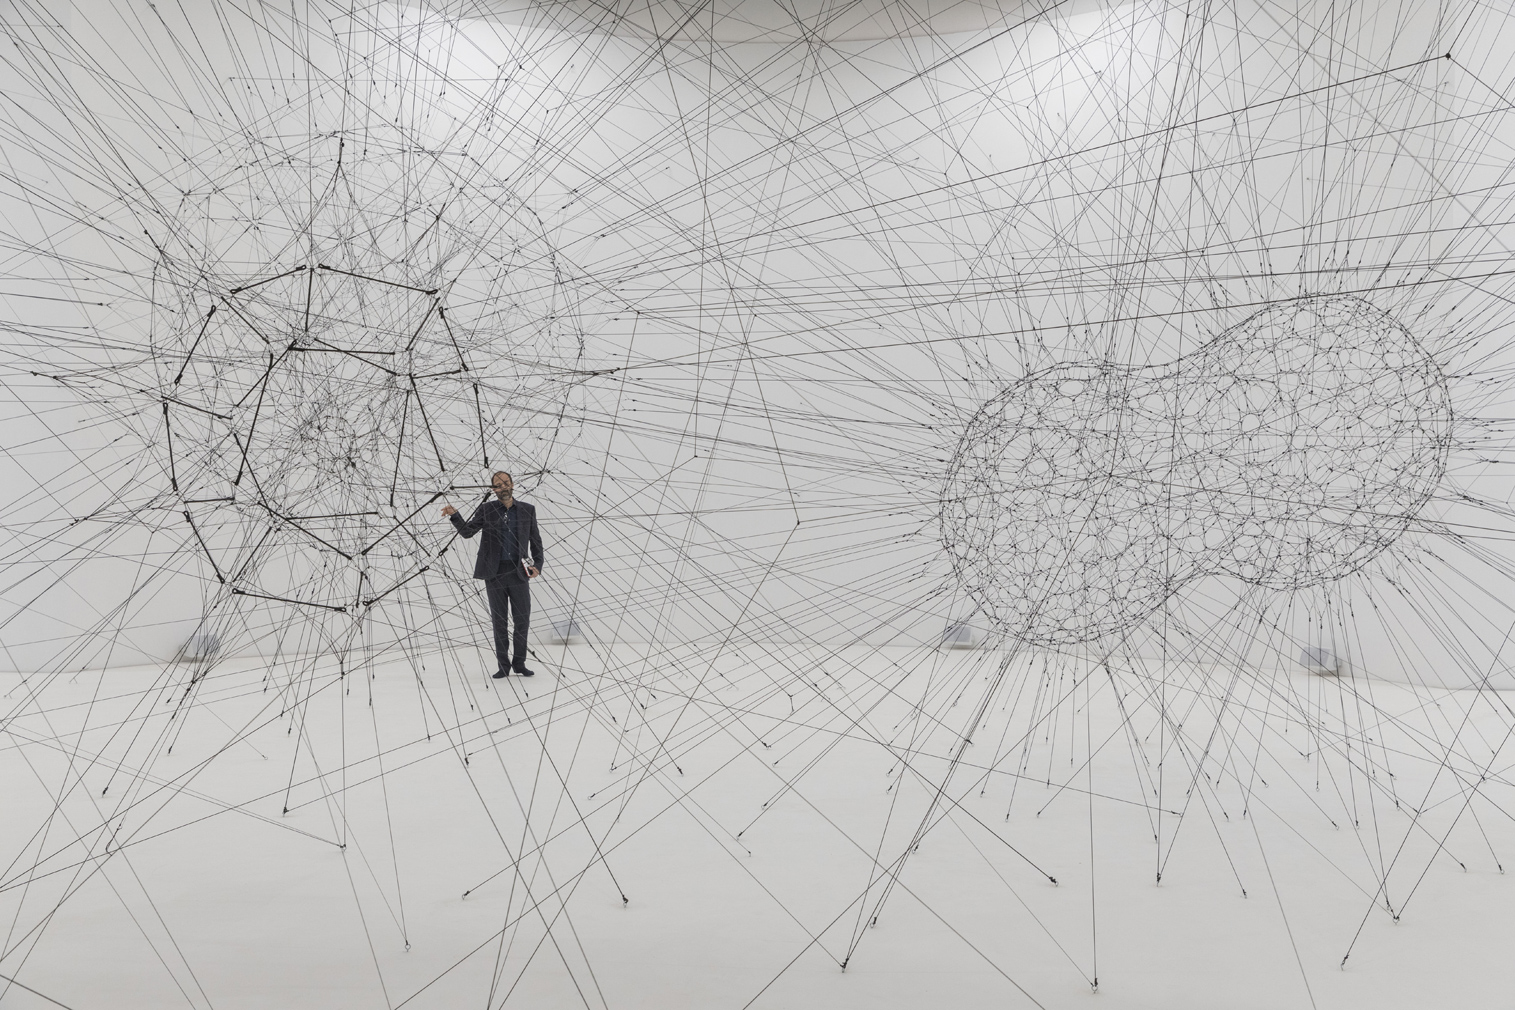 Tomás Saraceno spins a ‘cosmic’ spiderweb inside Paris’ Palais de Tokyo